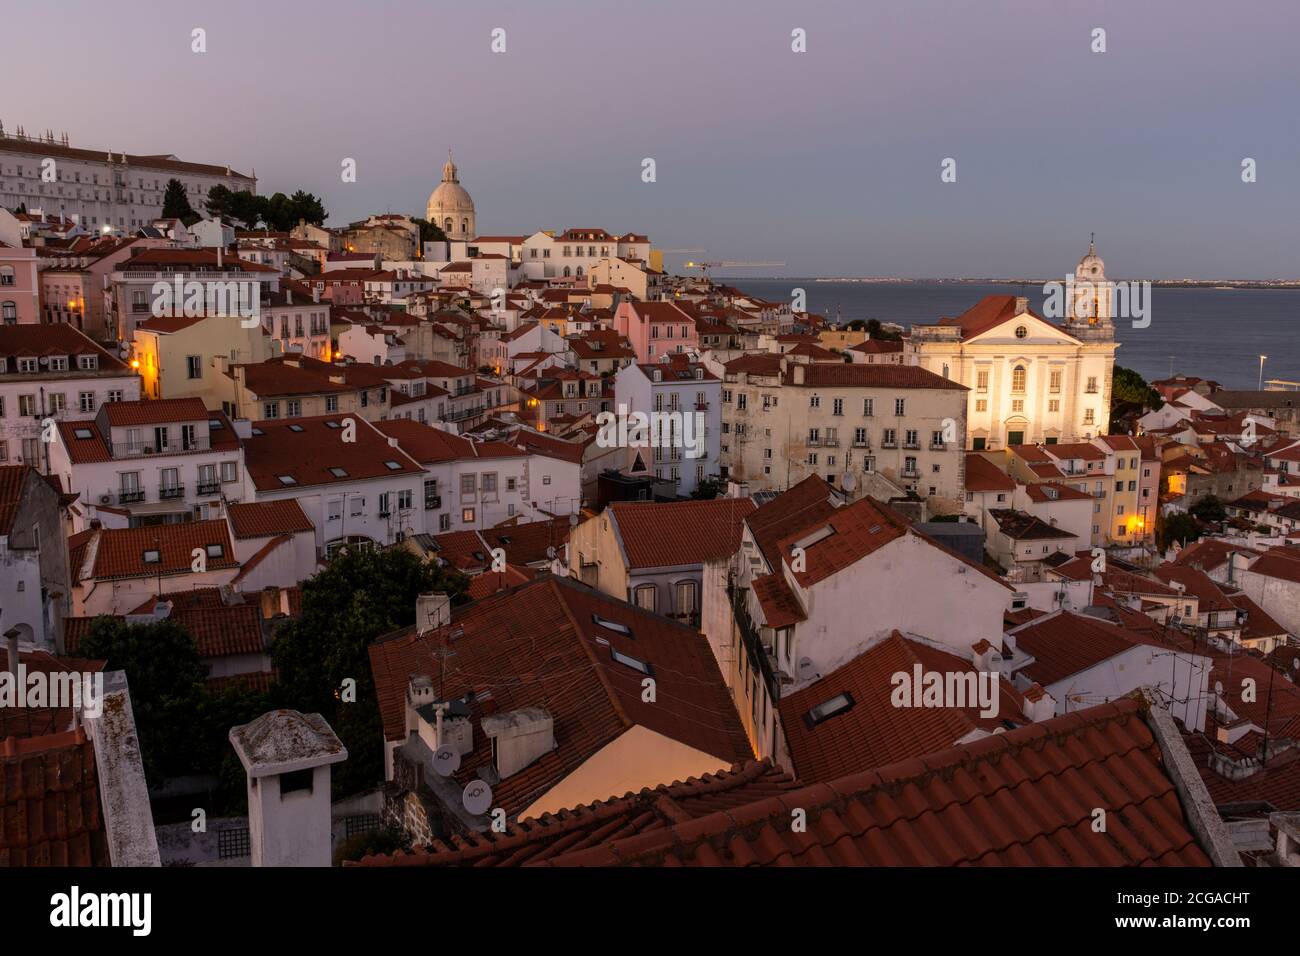 Belle vue sur les vieux bâtiments de la ville historique dans le centre de Lisbonne, Portugal Banque D'Images